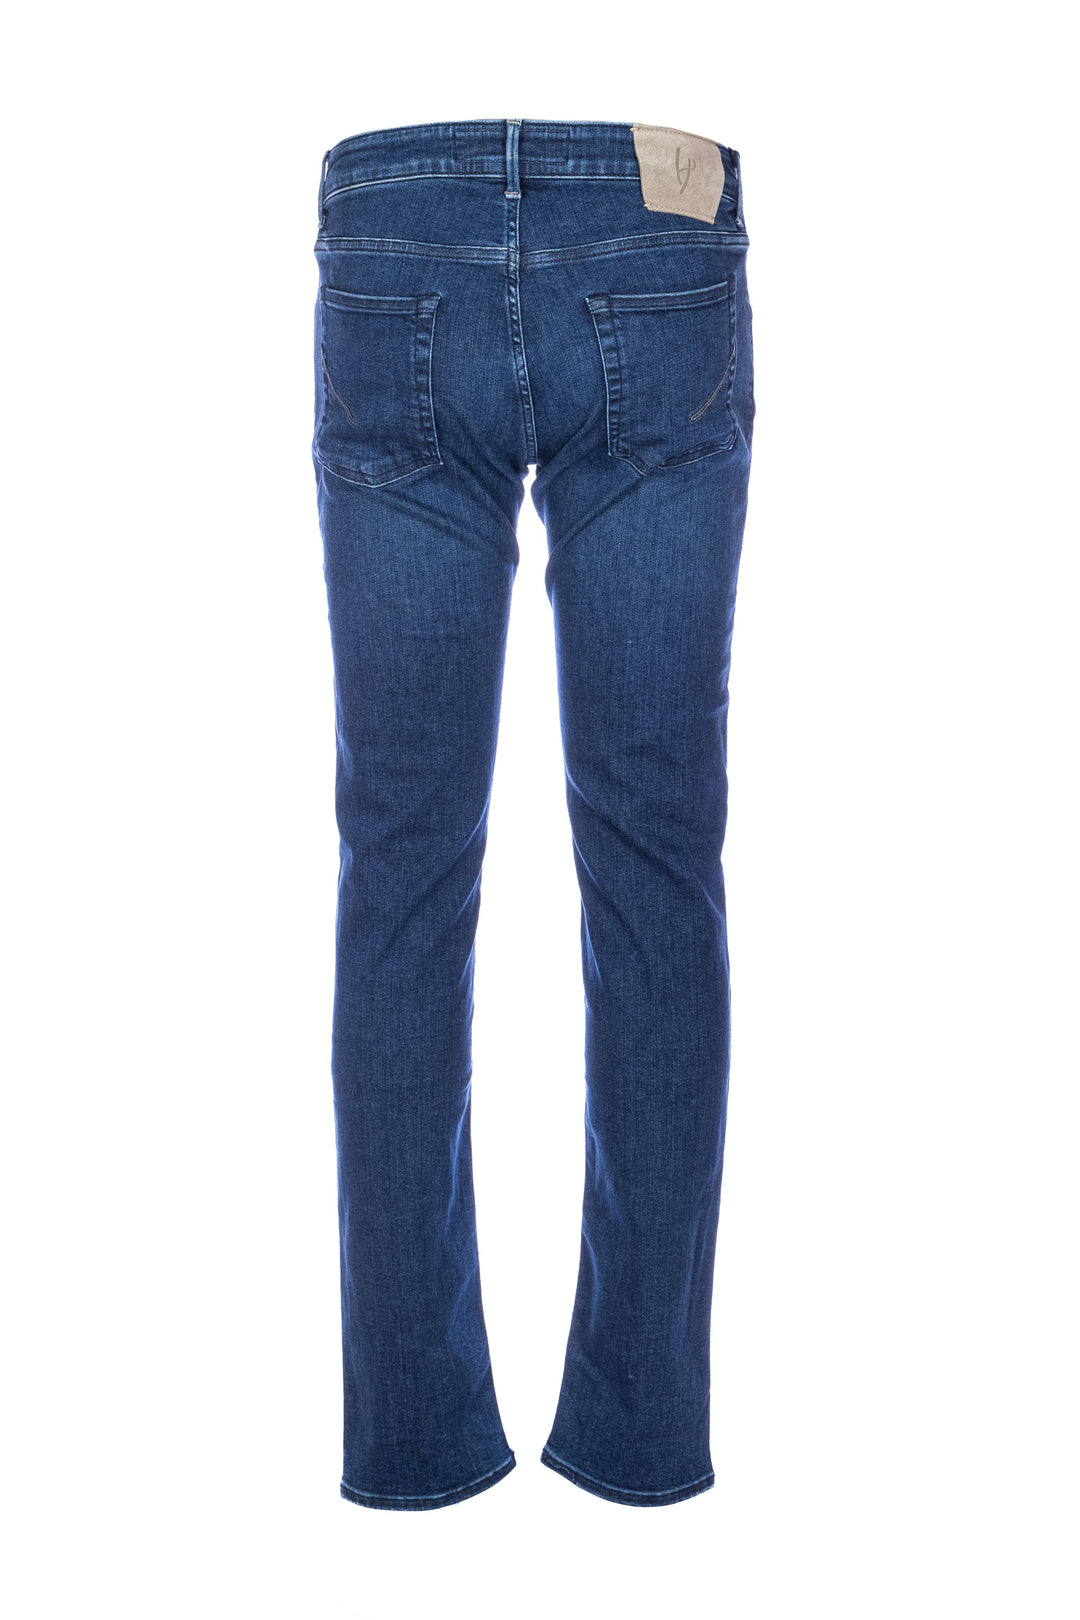 HANDPICKED Jeans 5 tasche “ORVIETO” in denim elasticizzato lavaggio medio - Mancinelli 1954